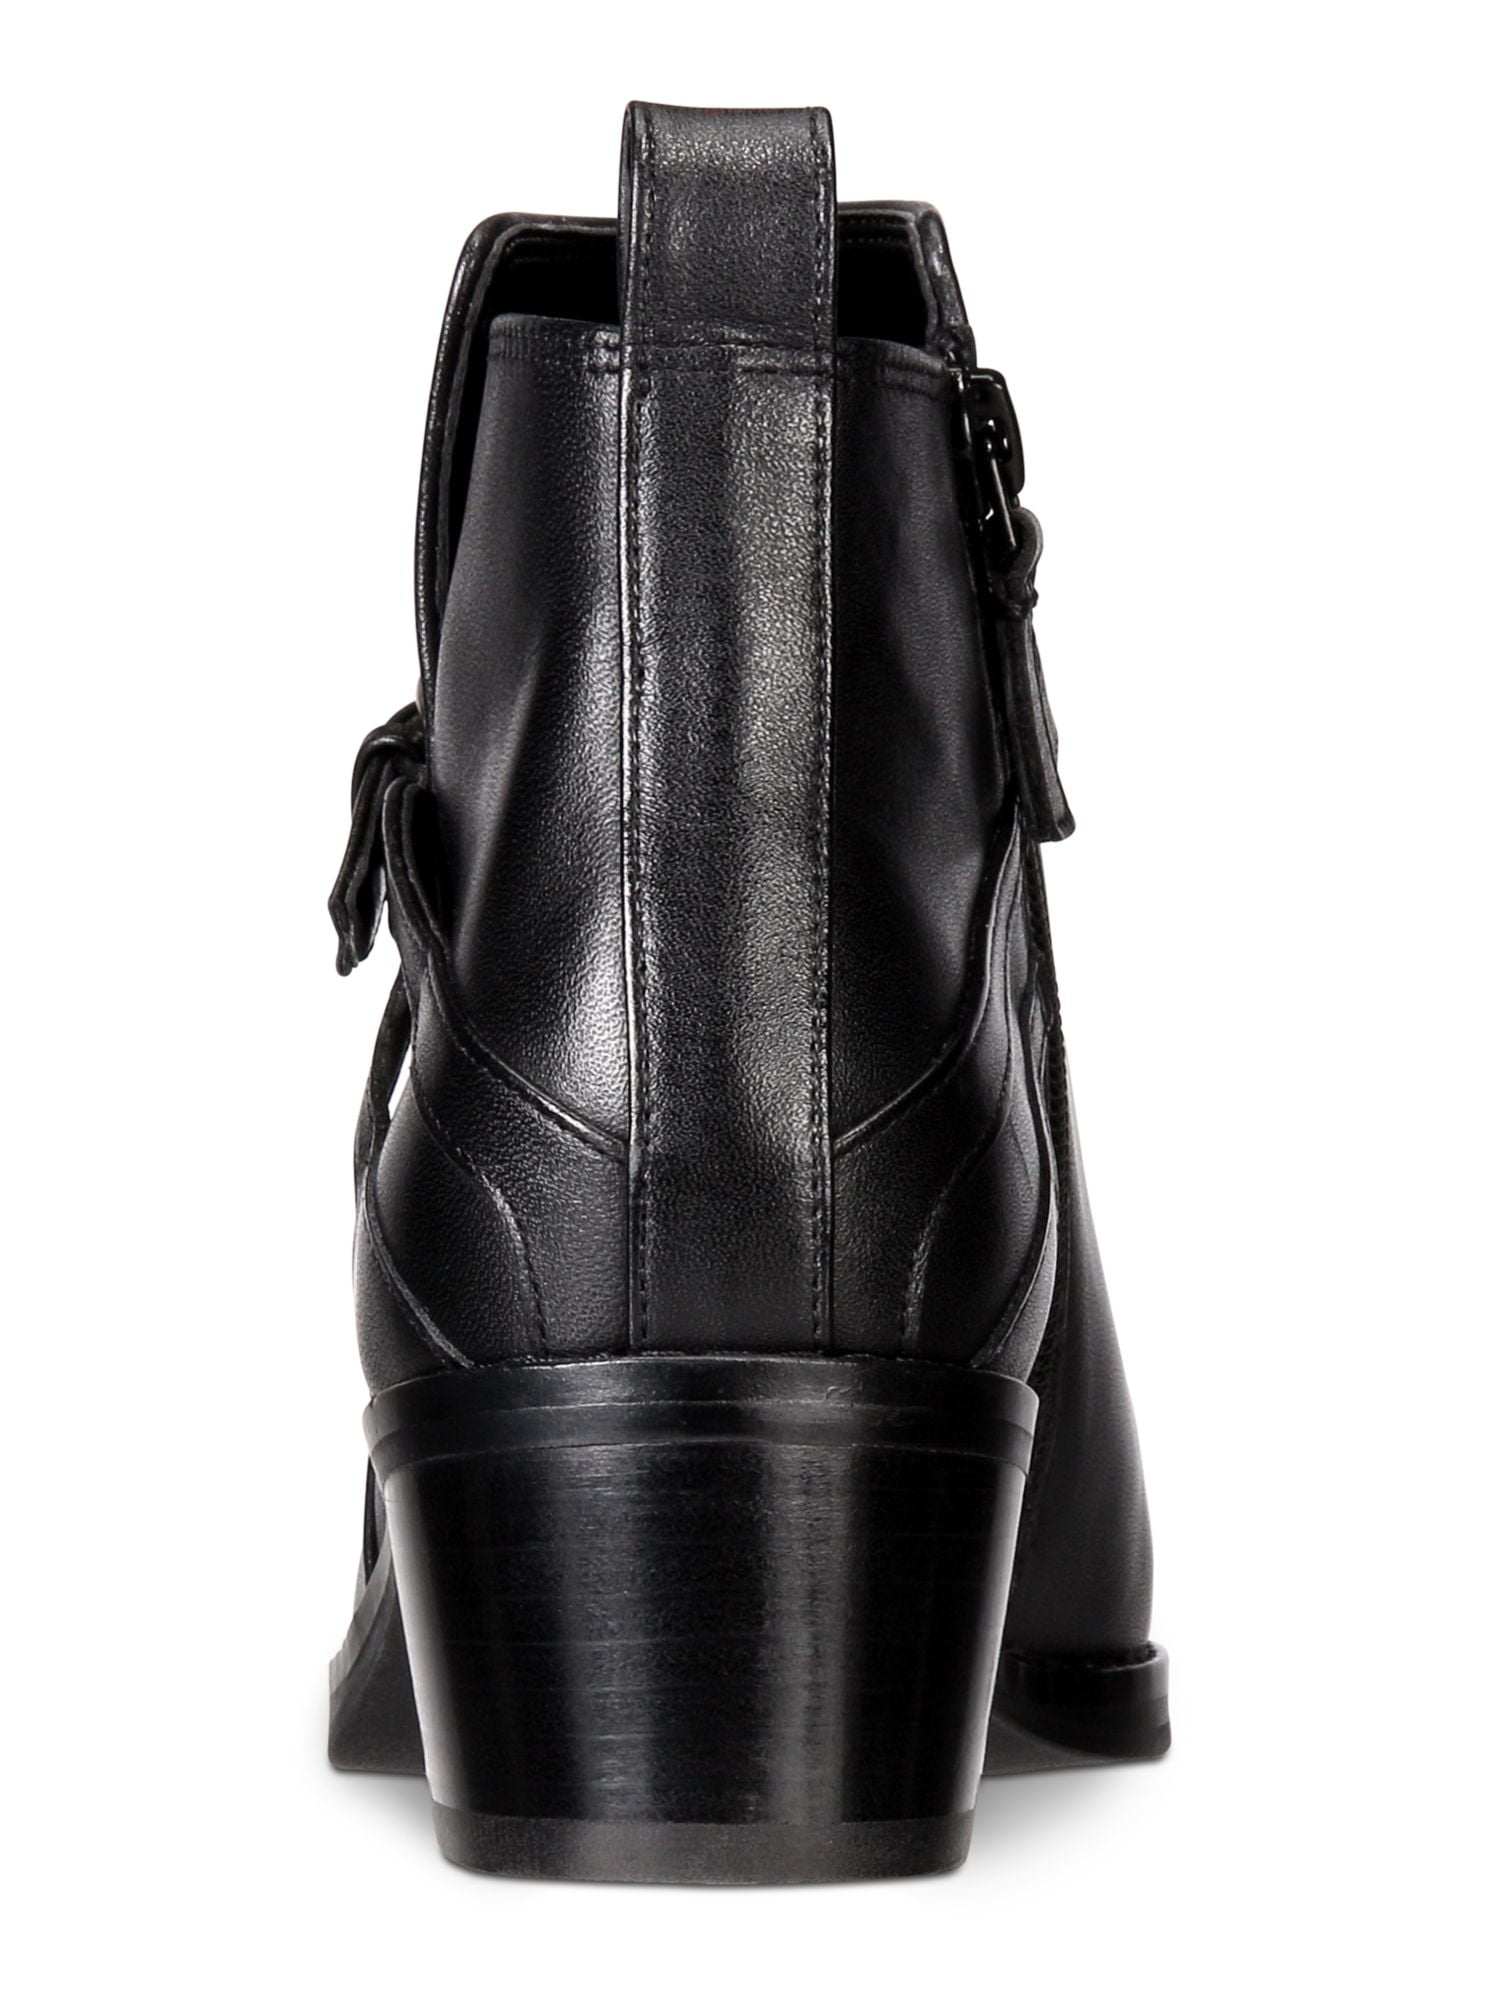 HAAN Womens Black Adjustable Strap Etta Round Toe Block Heel Zip-Up Leather 8 B - Walmart.com